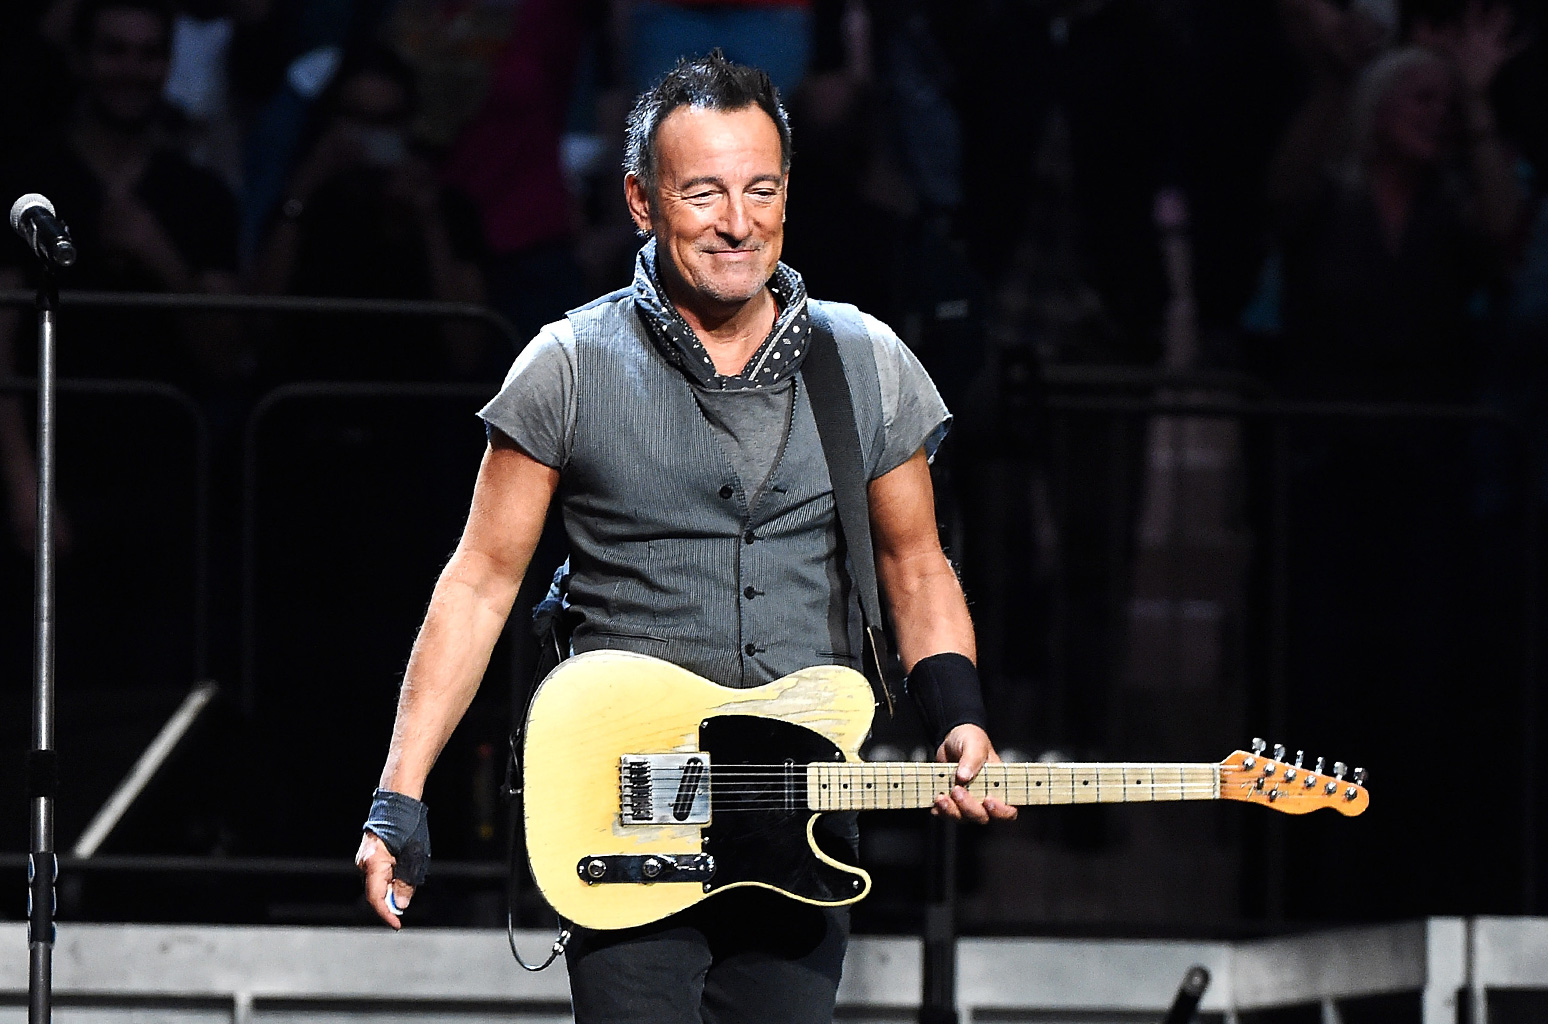 Bruce-Springsteen-MSG-2016-perform-billboard-650-1548.jpg